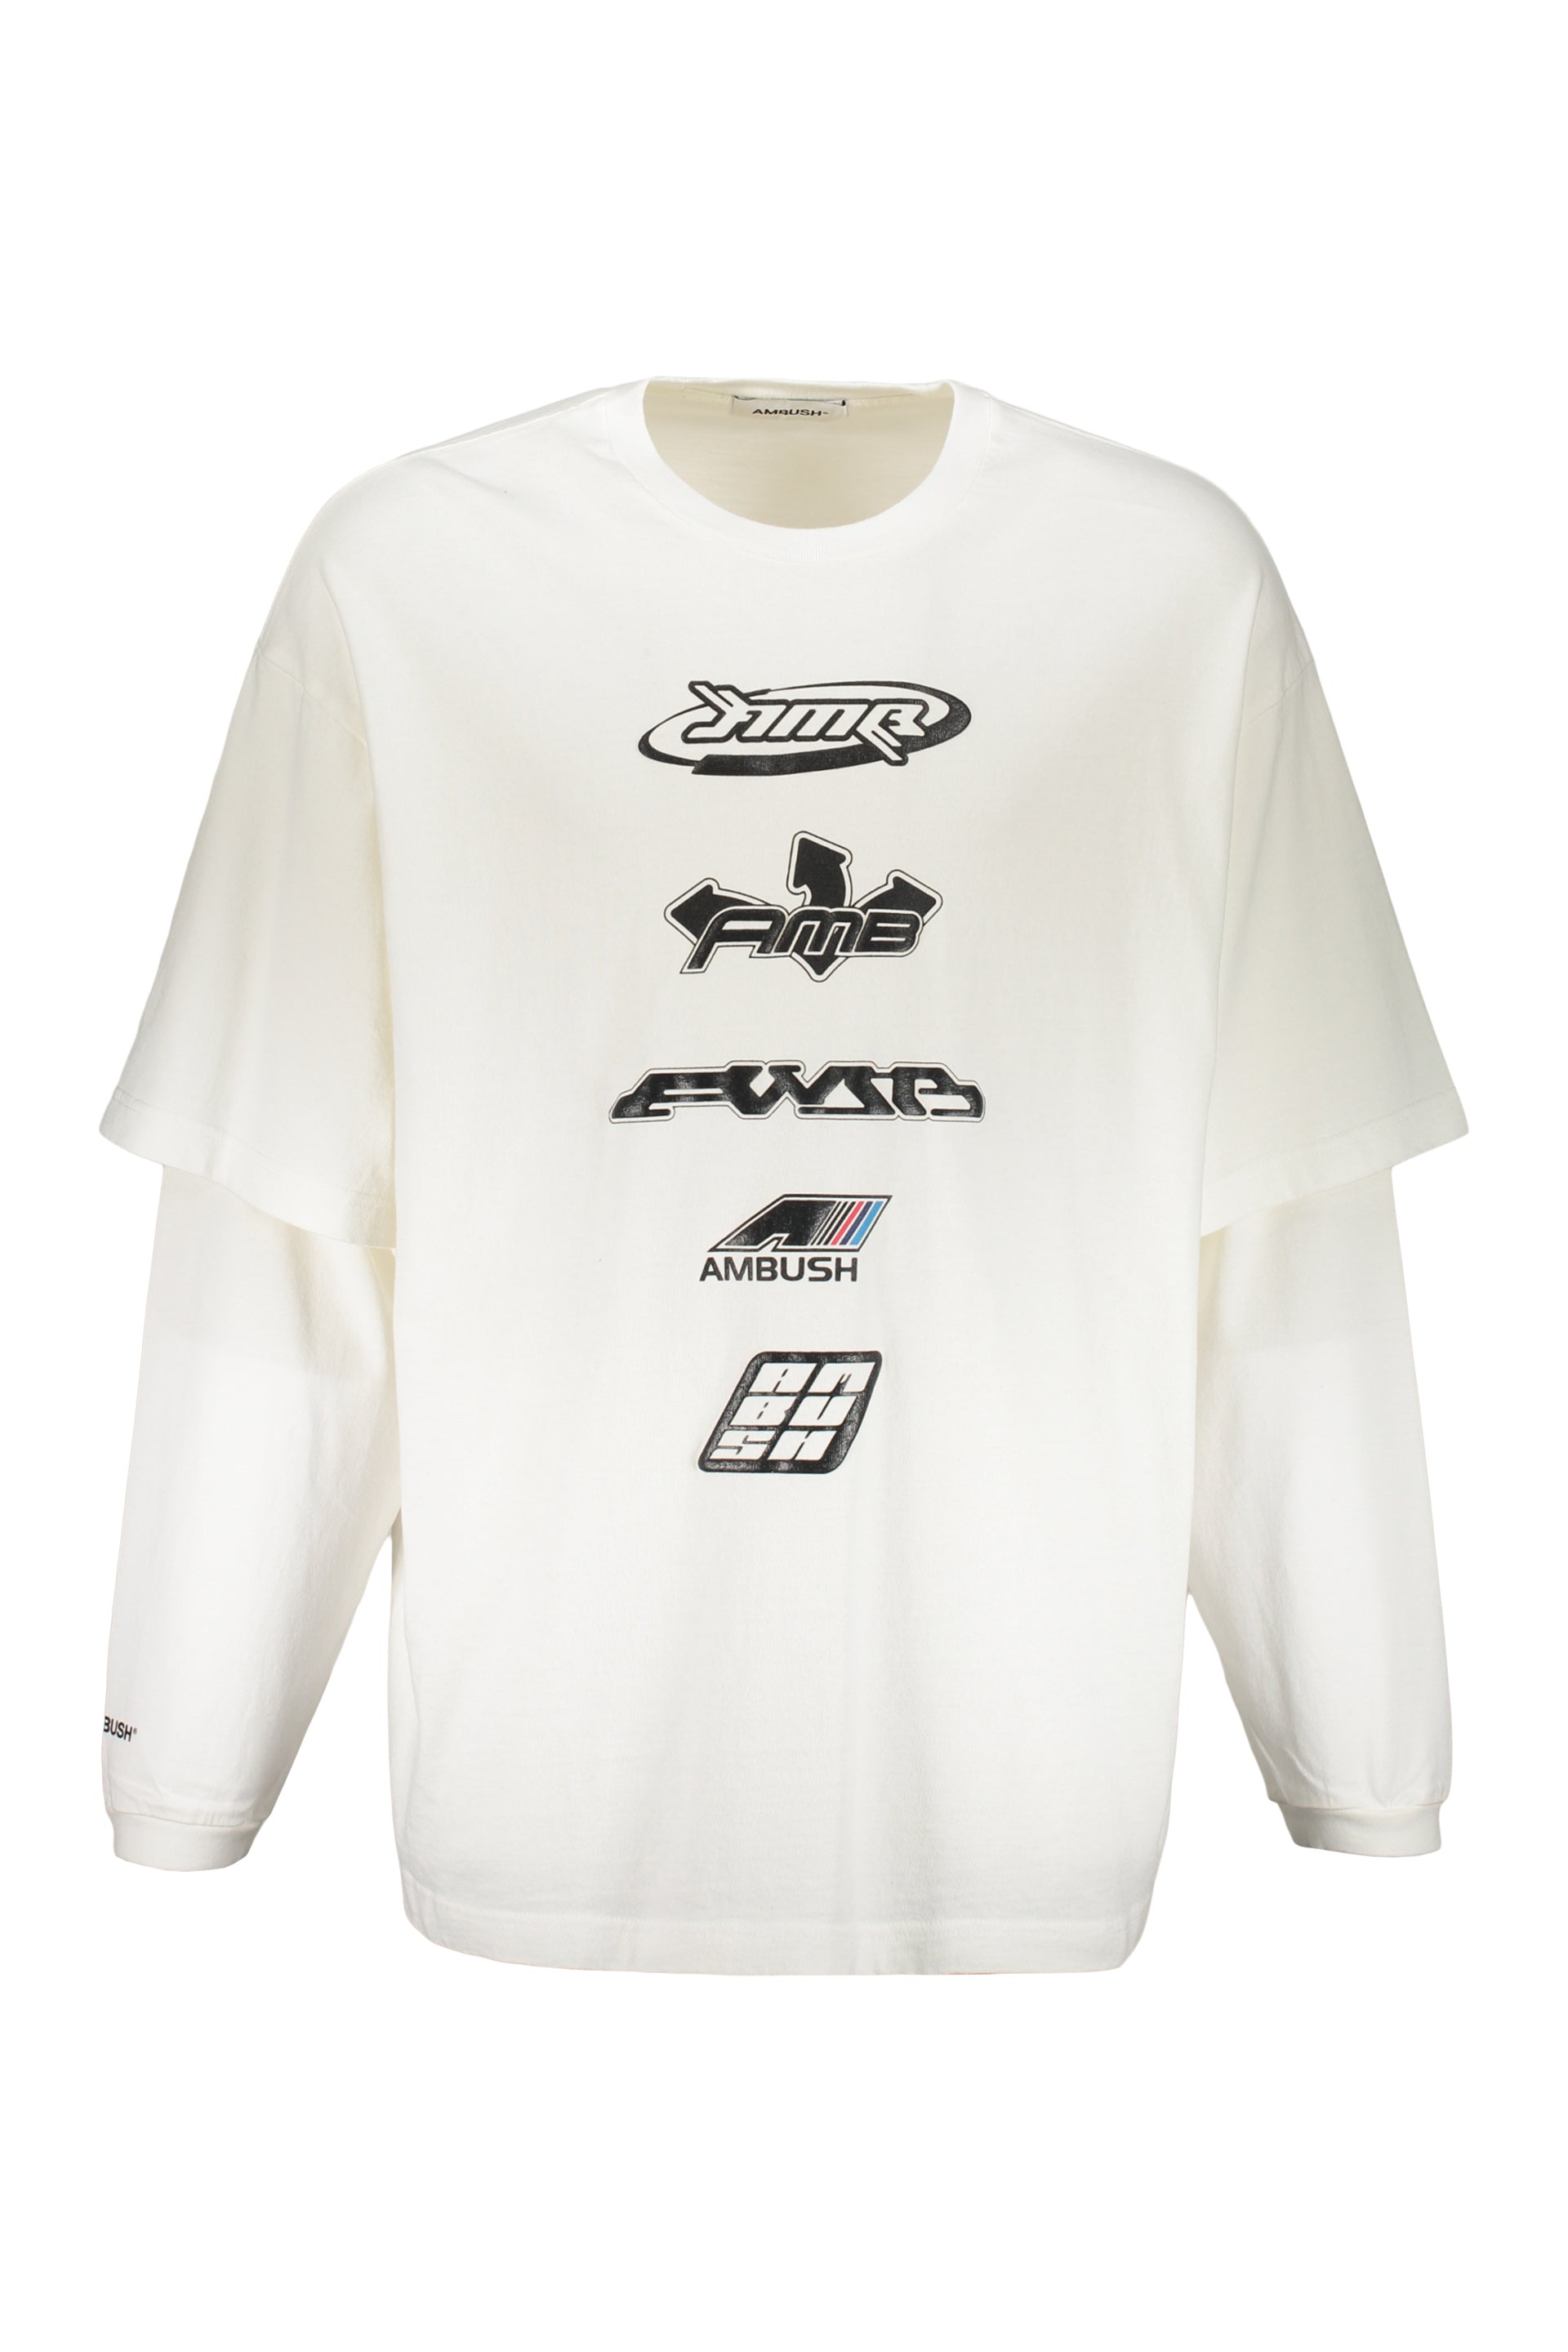 AMBUSH-OUTLET-SALE-Long-sleeve-cotton-t-shirt-Shirts-L-ARCHIVE-COLLECTION.jpg